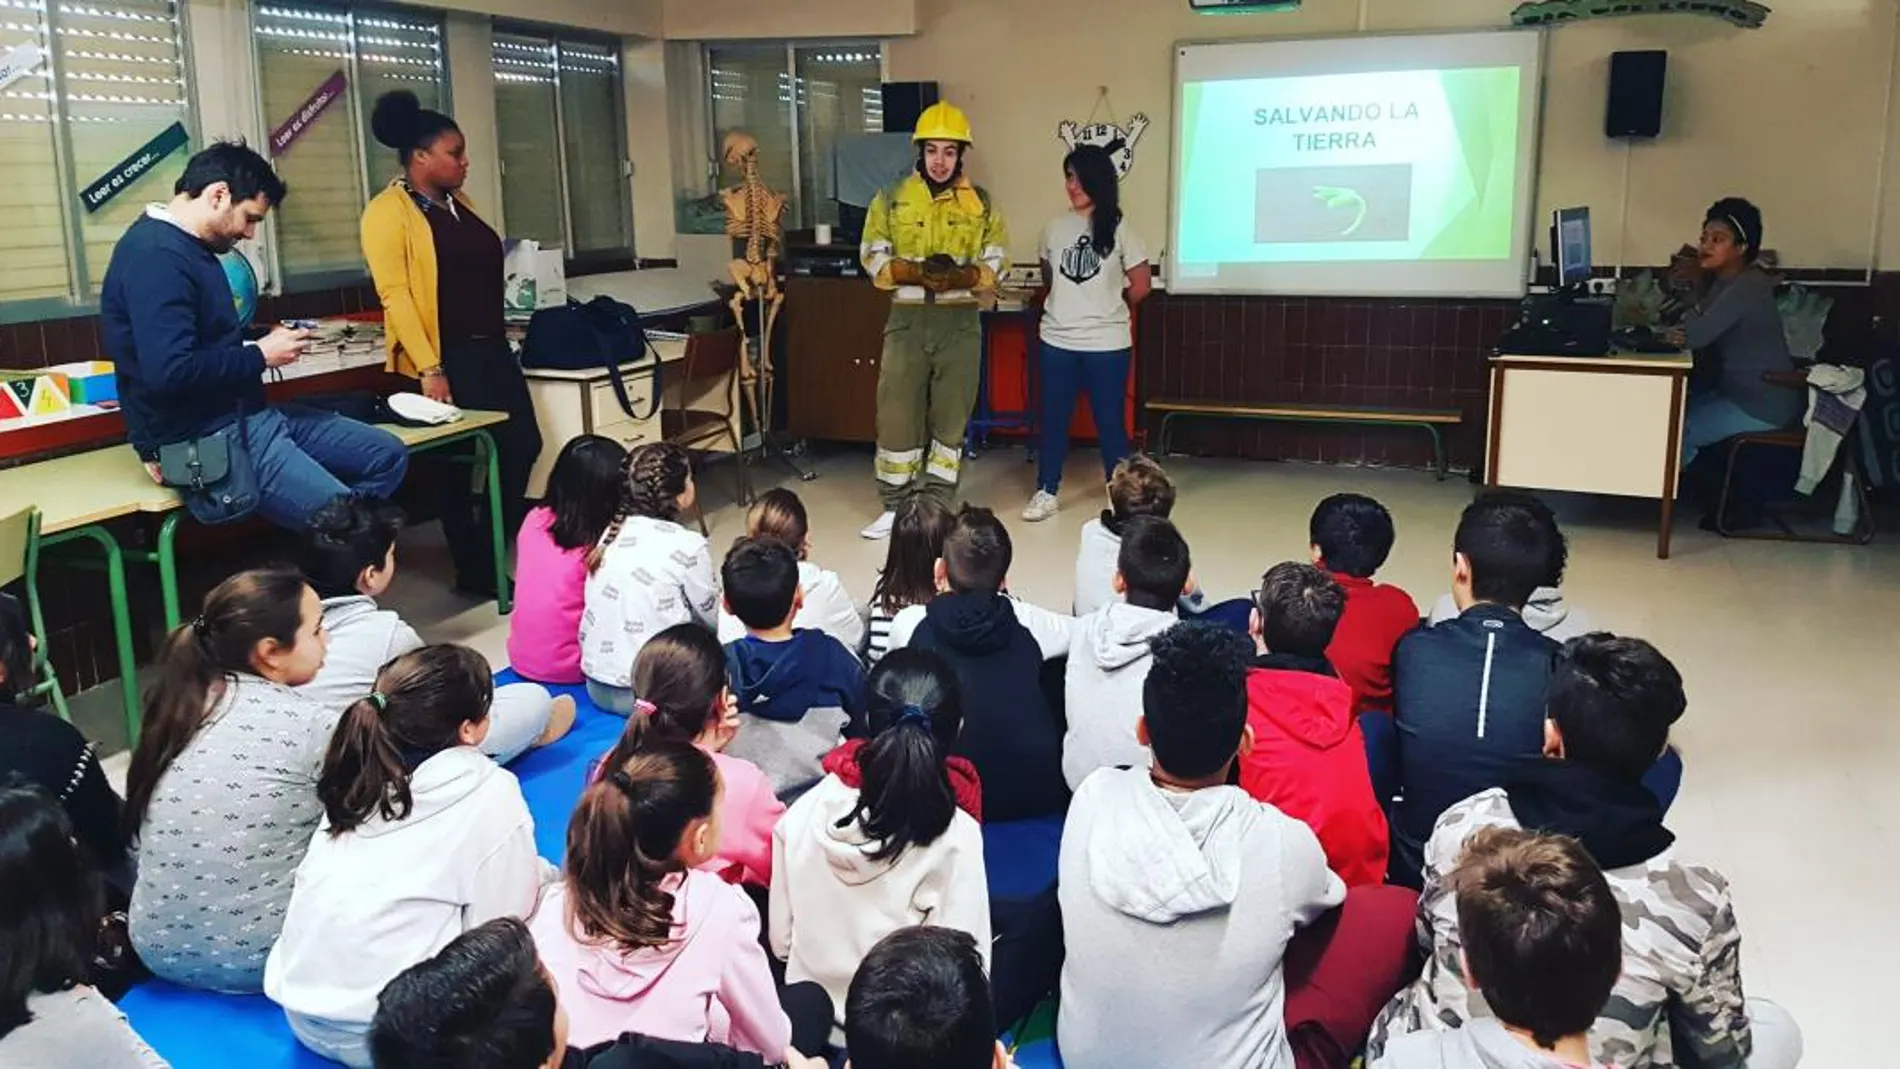 Proyecto de voluntariado medio ambiental que la Usal lleva a cabo en los colegios de la provincia para concienciar sobre el respeto a la naturaleza